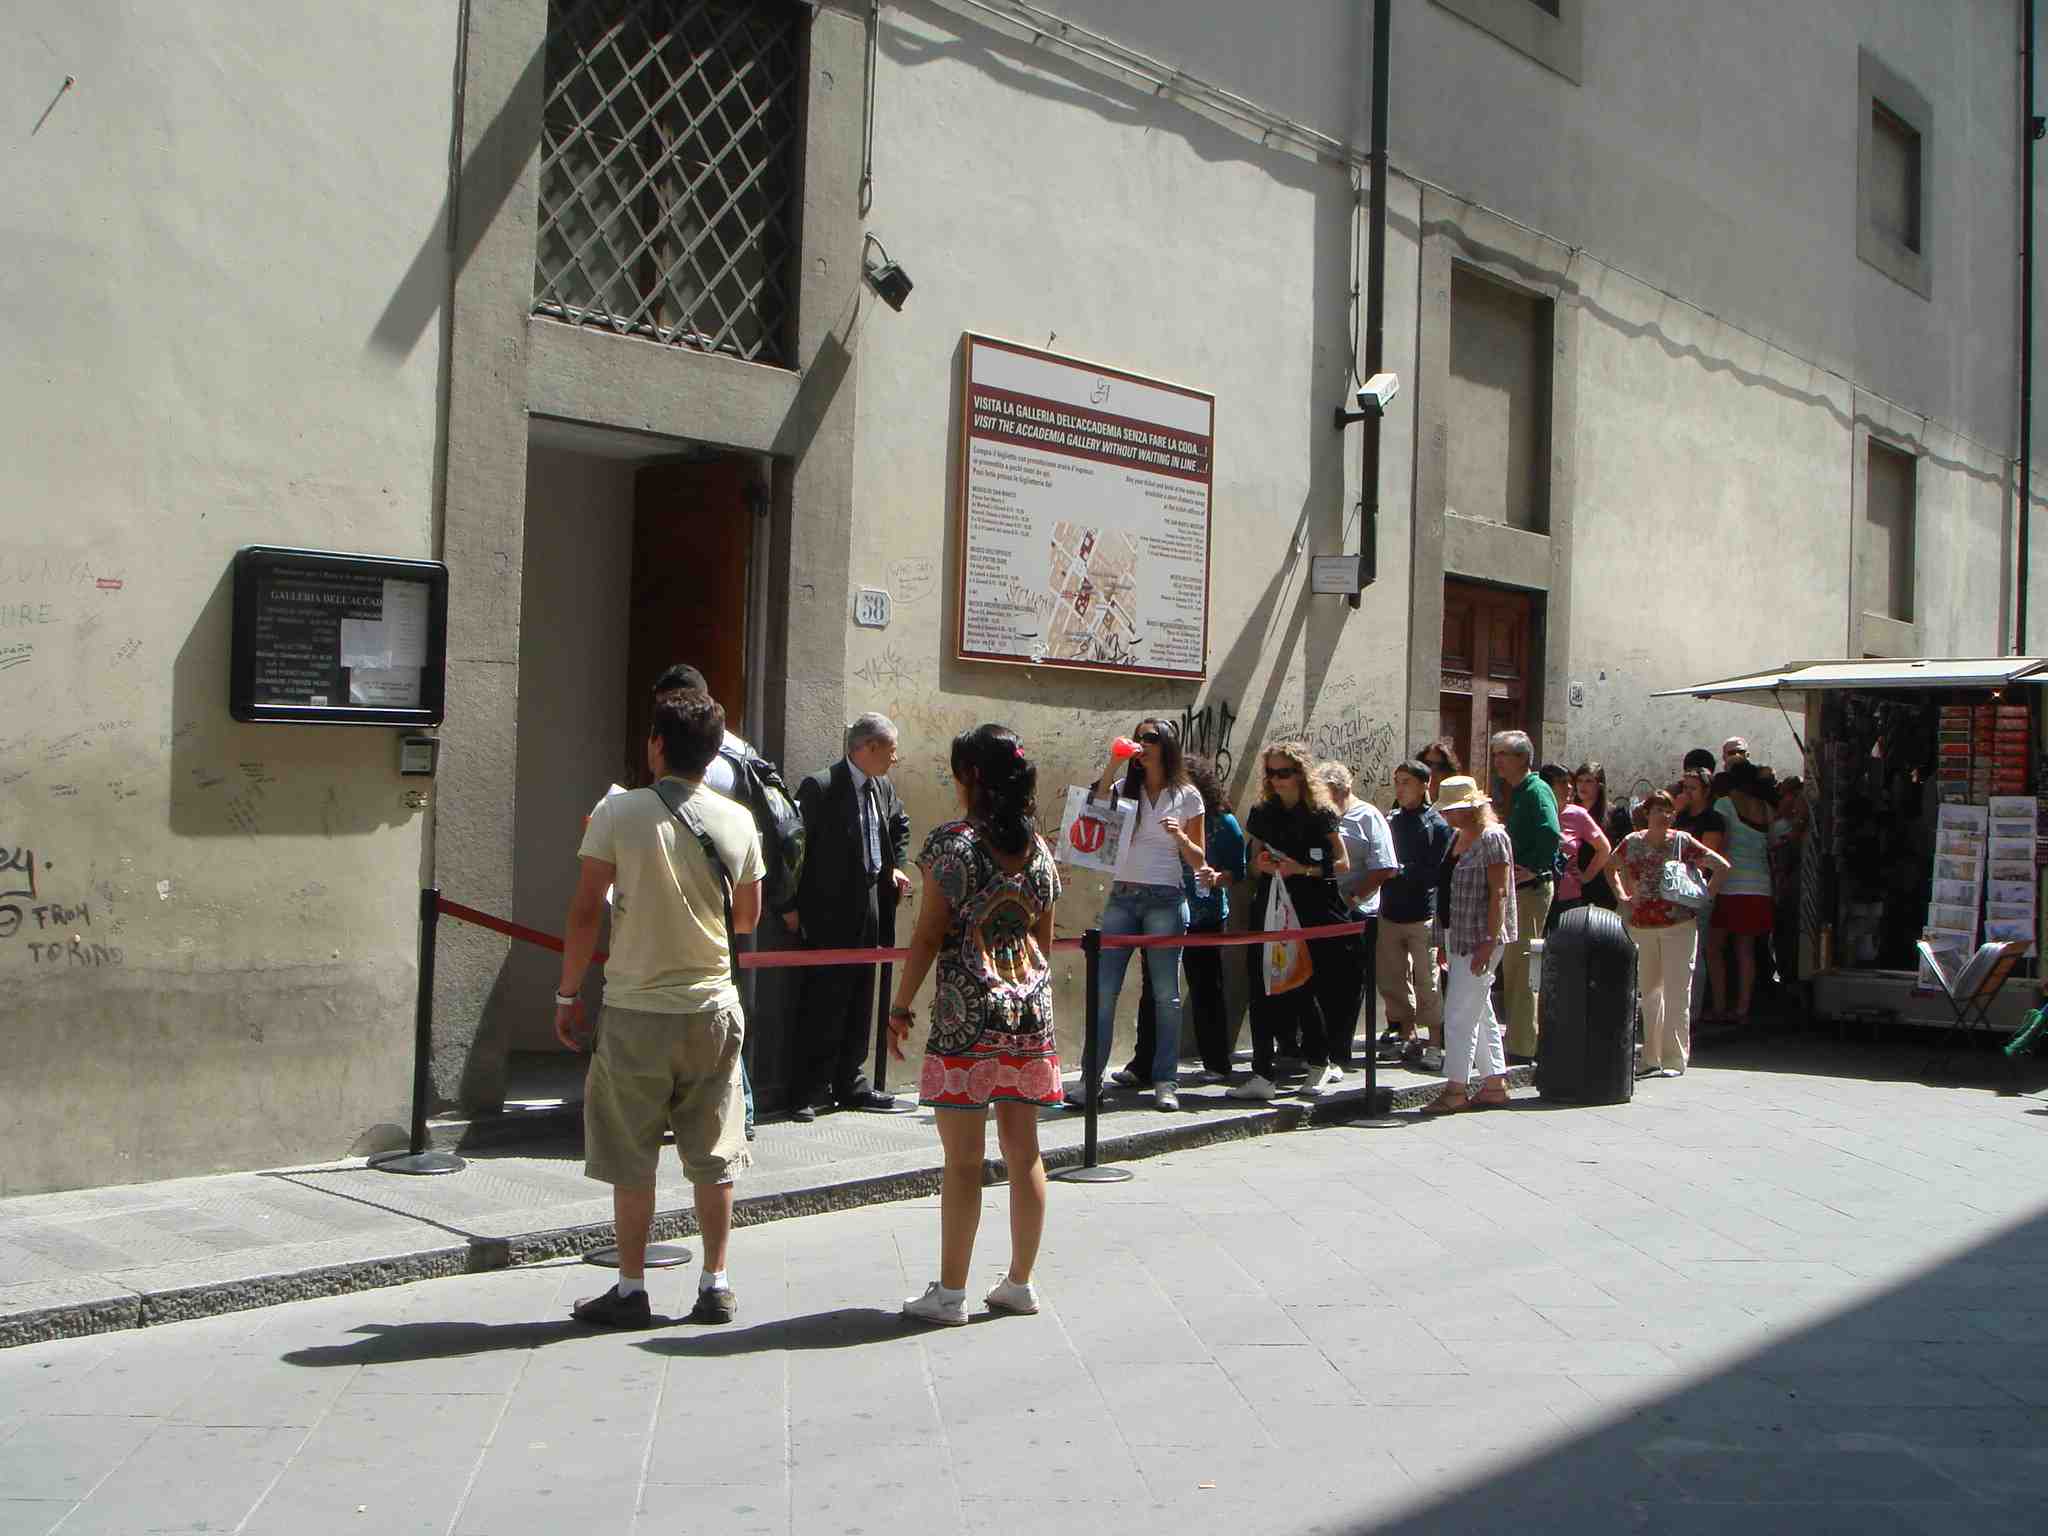 アカデミア美術館。館内の人数を制御しているため、行列が出来る。そんなに長くは待たなくて、入場出来た。